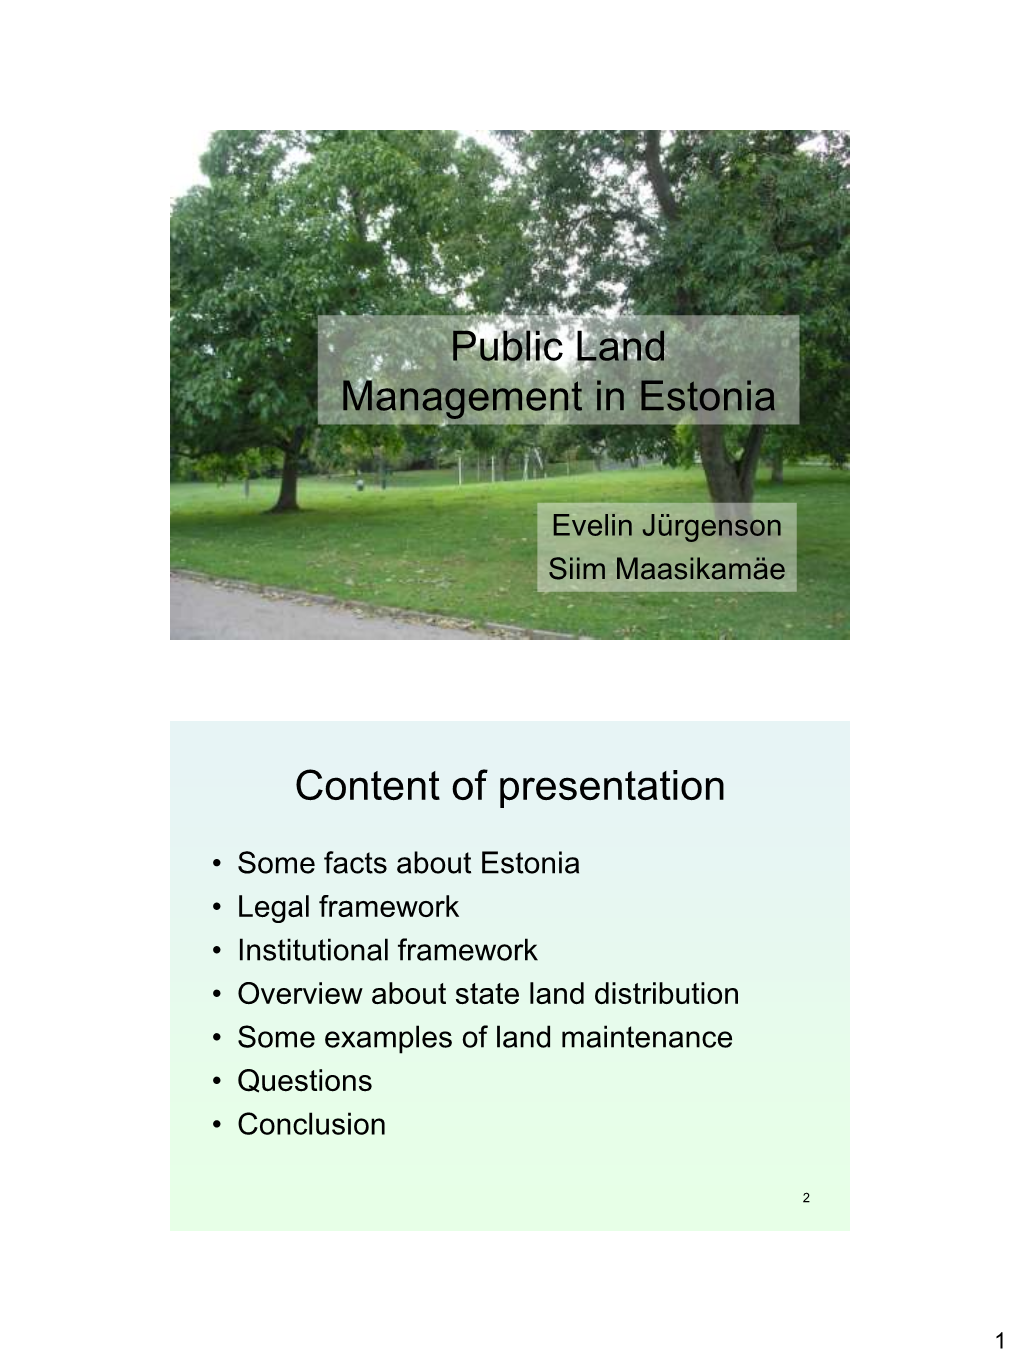 Public Land Management in Estonia